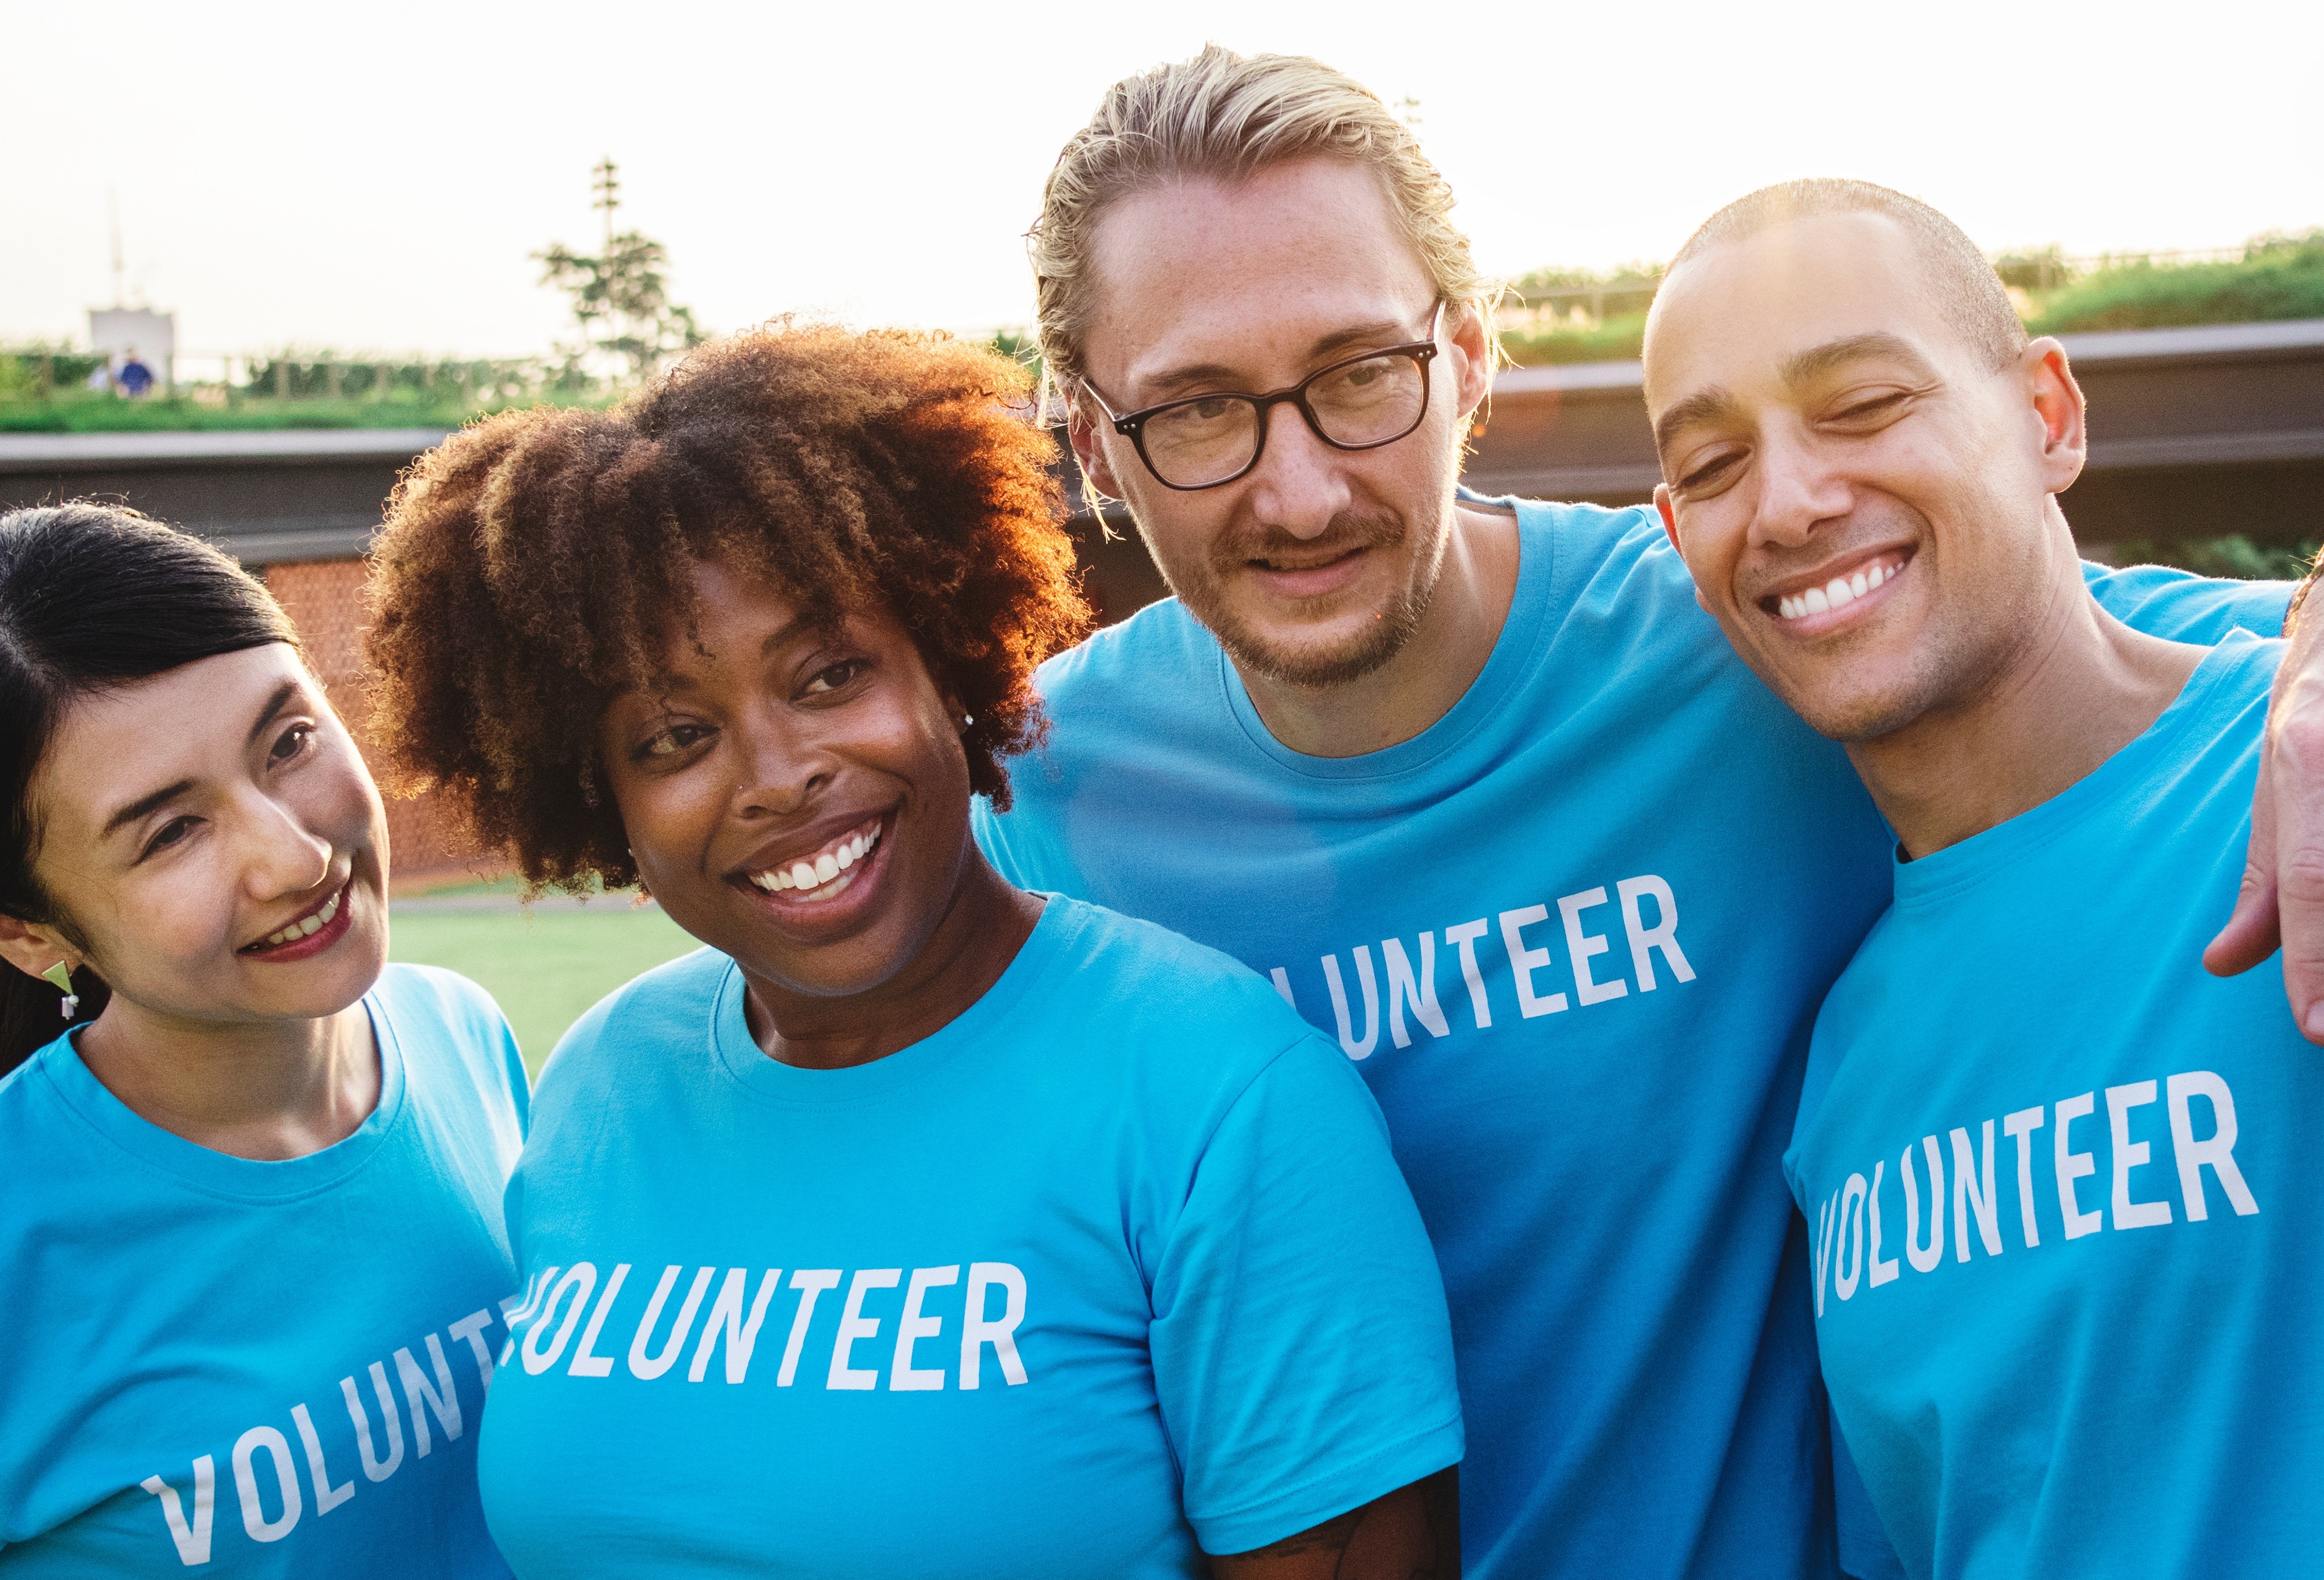 Vier mensen in blauwe t-shirt met tekst volunteer